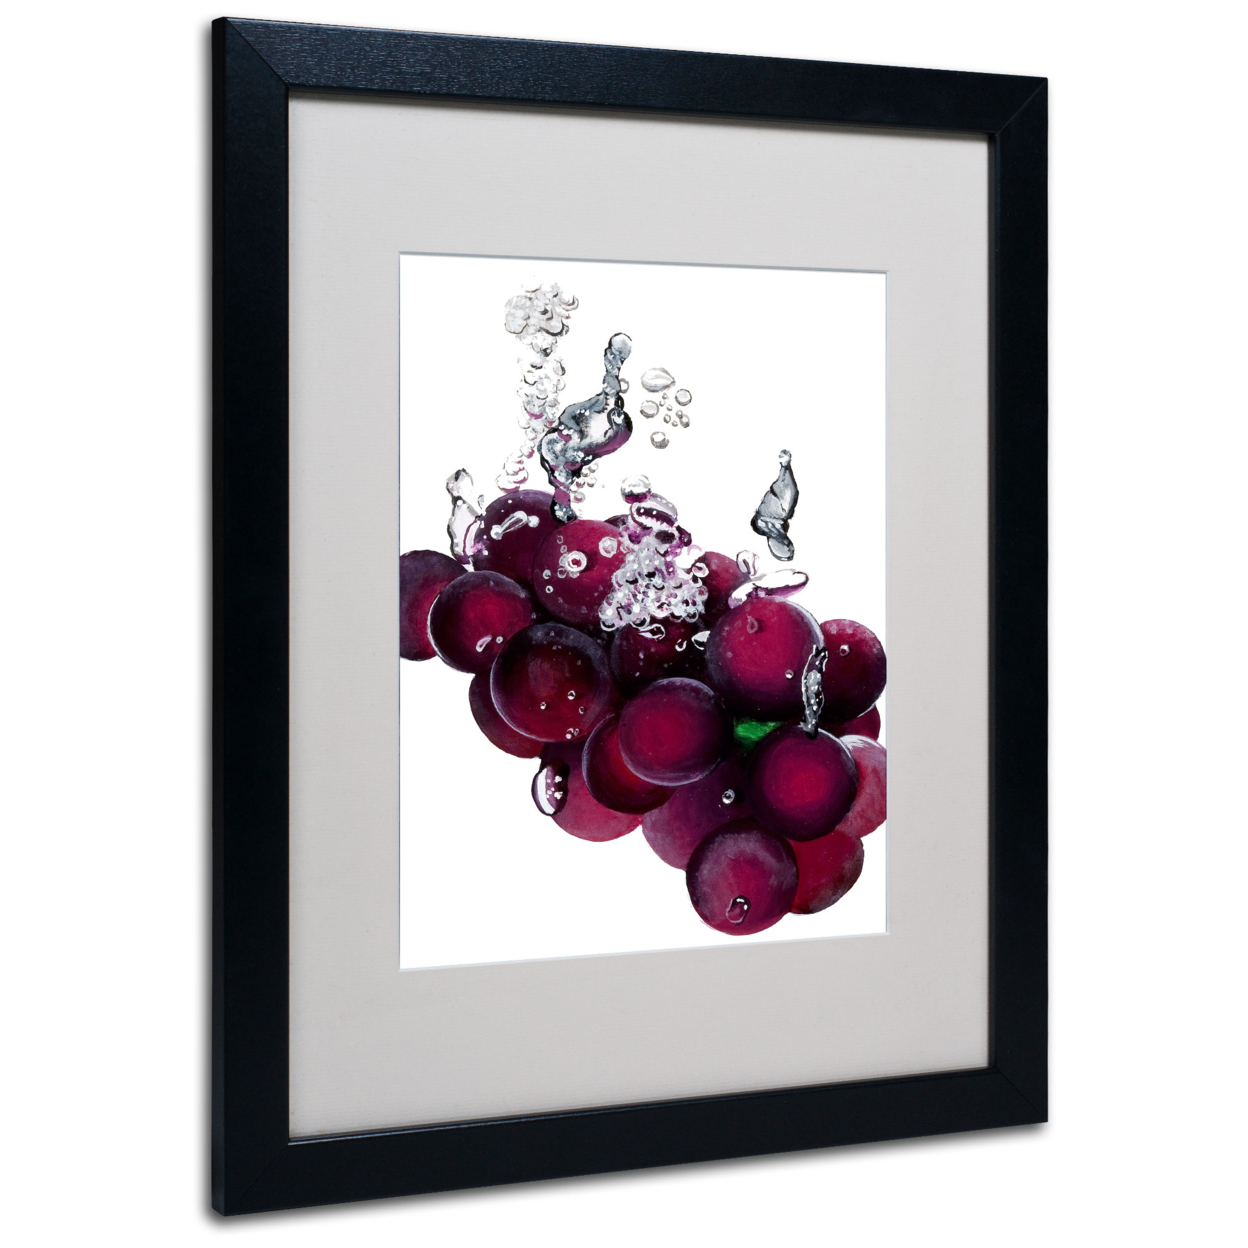 Roderick Stevens 'Grapes Splash II' Black Wooden Framed Art 18 X 22 Inches